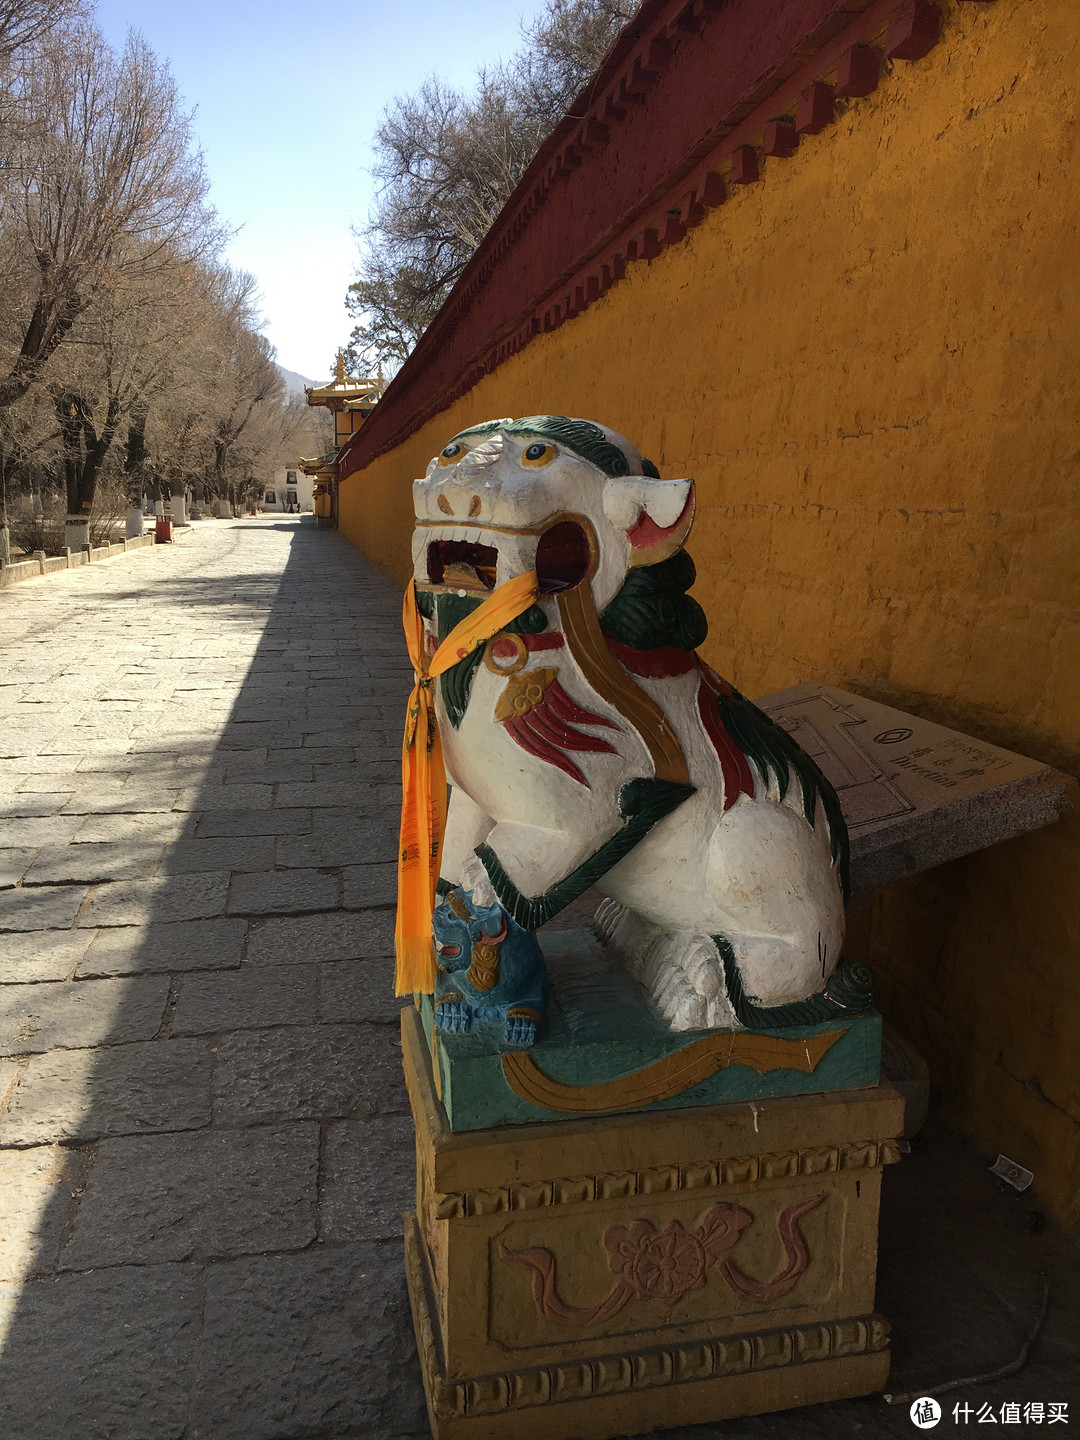 达赖喇嘛的冬宫布达拉宫与夏宫罗布林卡